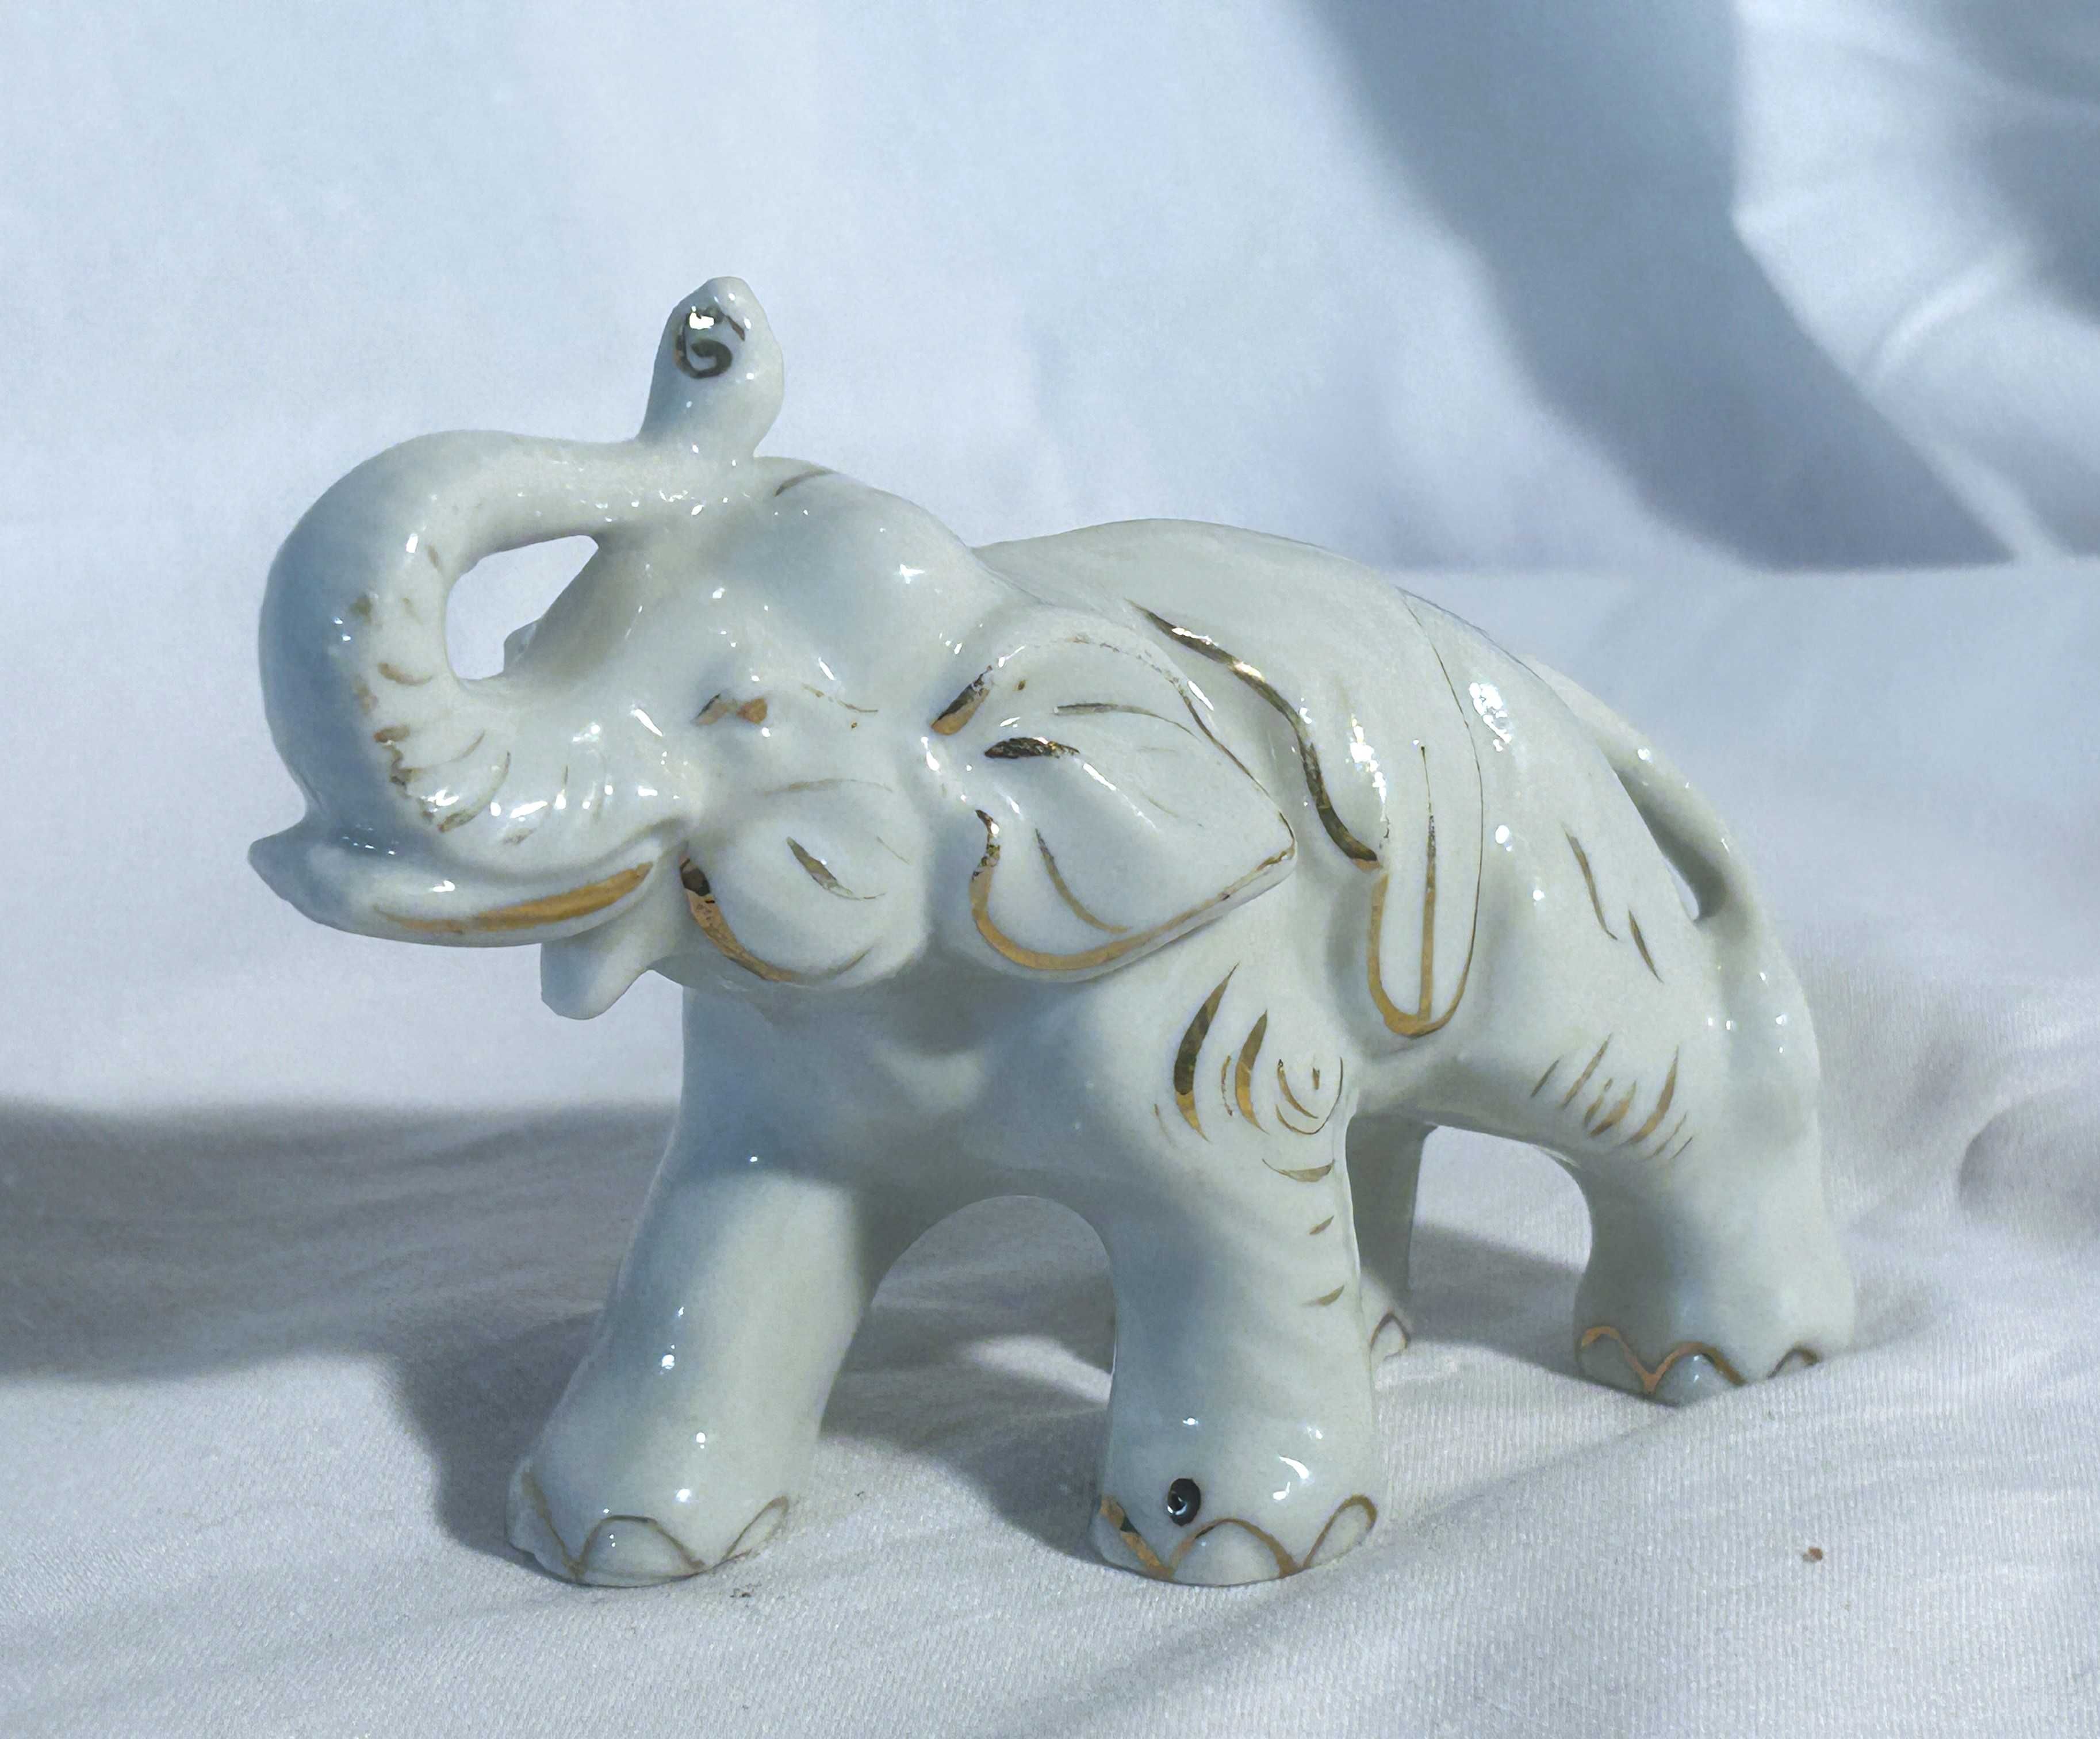 Figurka słoń, biała porcelana, japońska, szkliwiona kolekcjonerska